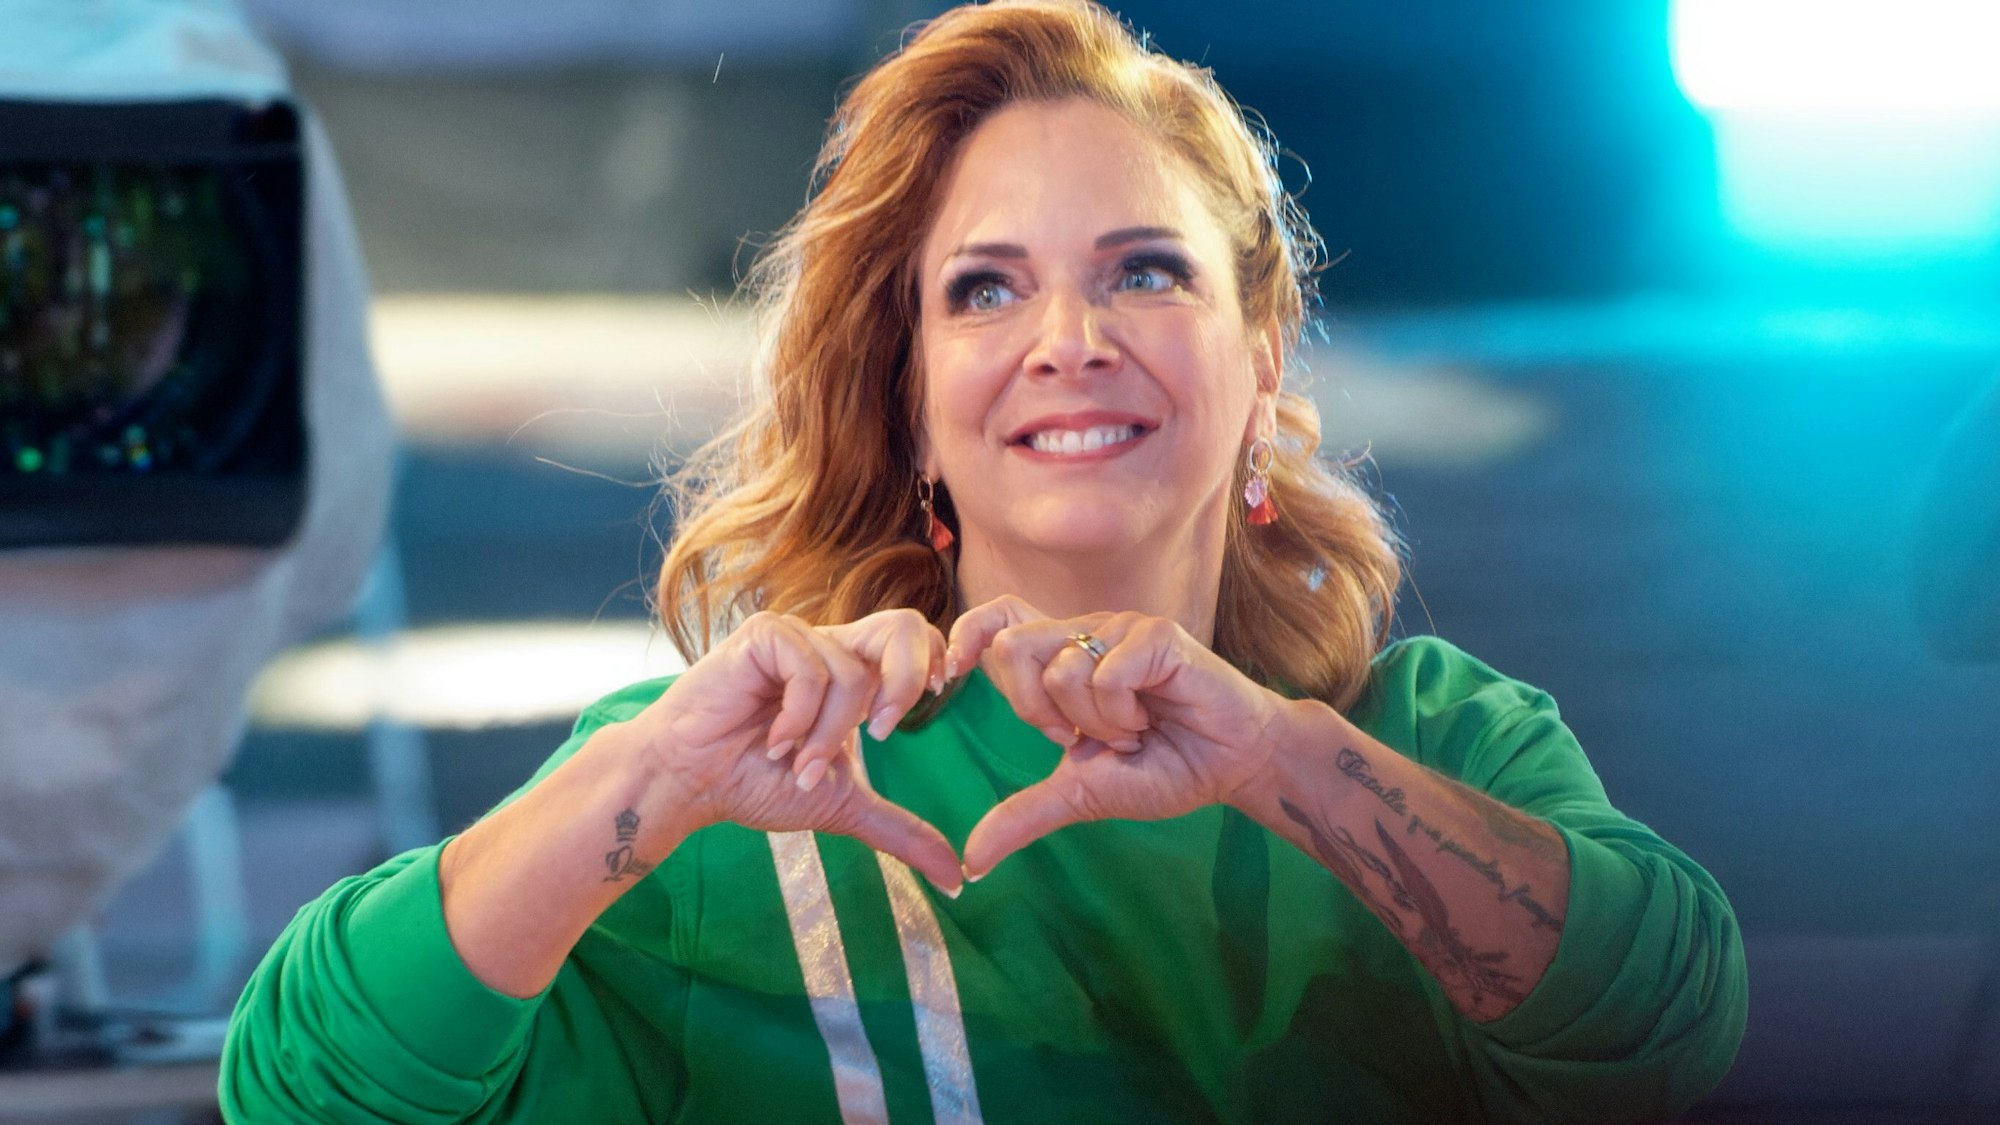 Die Teilnehmerin Danni Büchner zeigt bei der Auftaktsendung der Sat1 Fernsehshow Promi Big Brother2021 im Studio mit ihren Händen ein Herz. das Foto entstand am 6. August 2021.